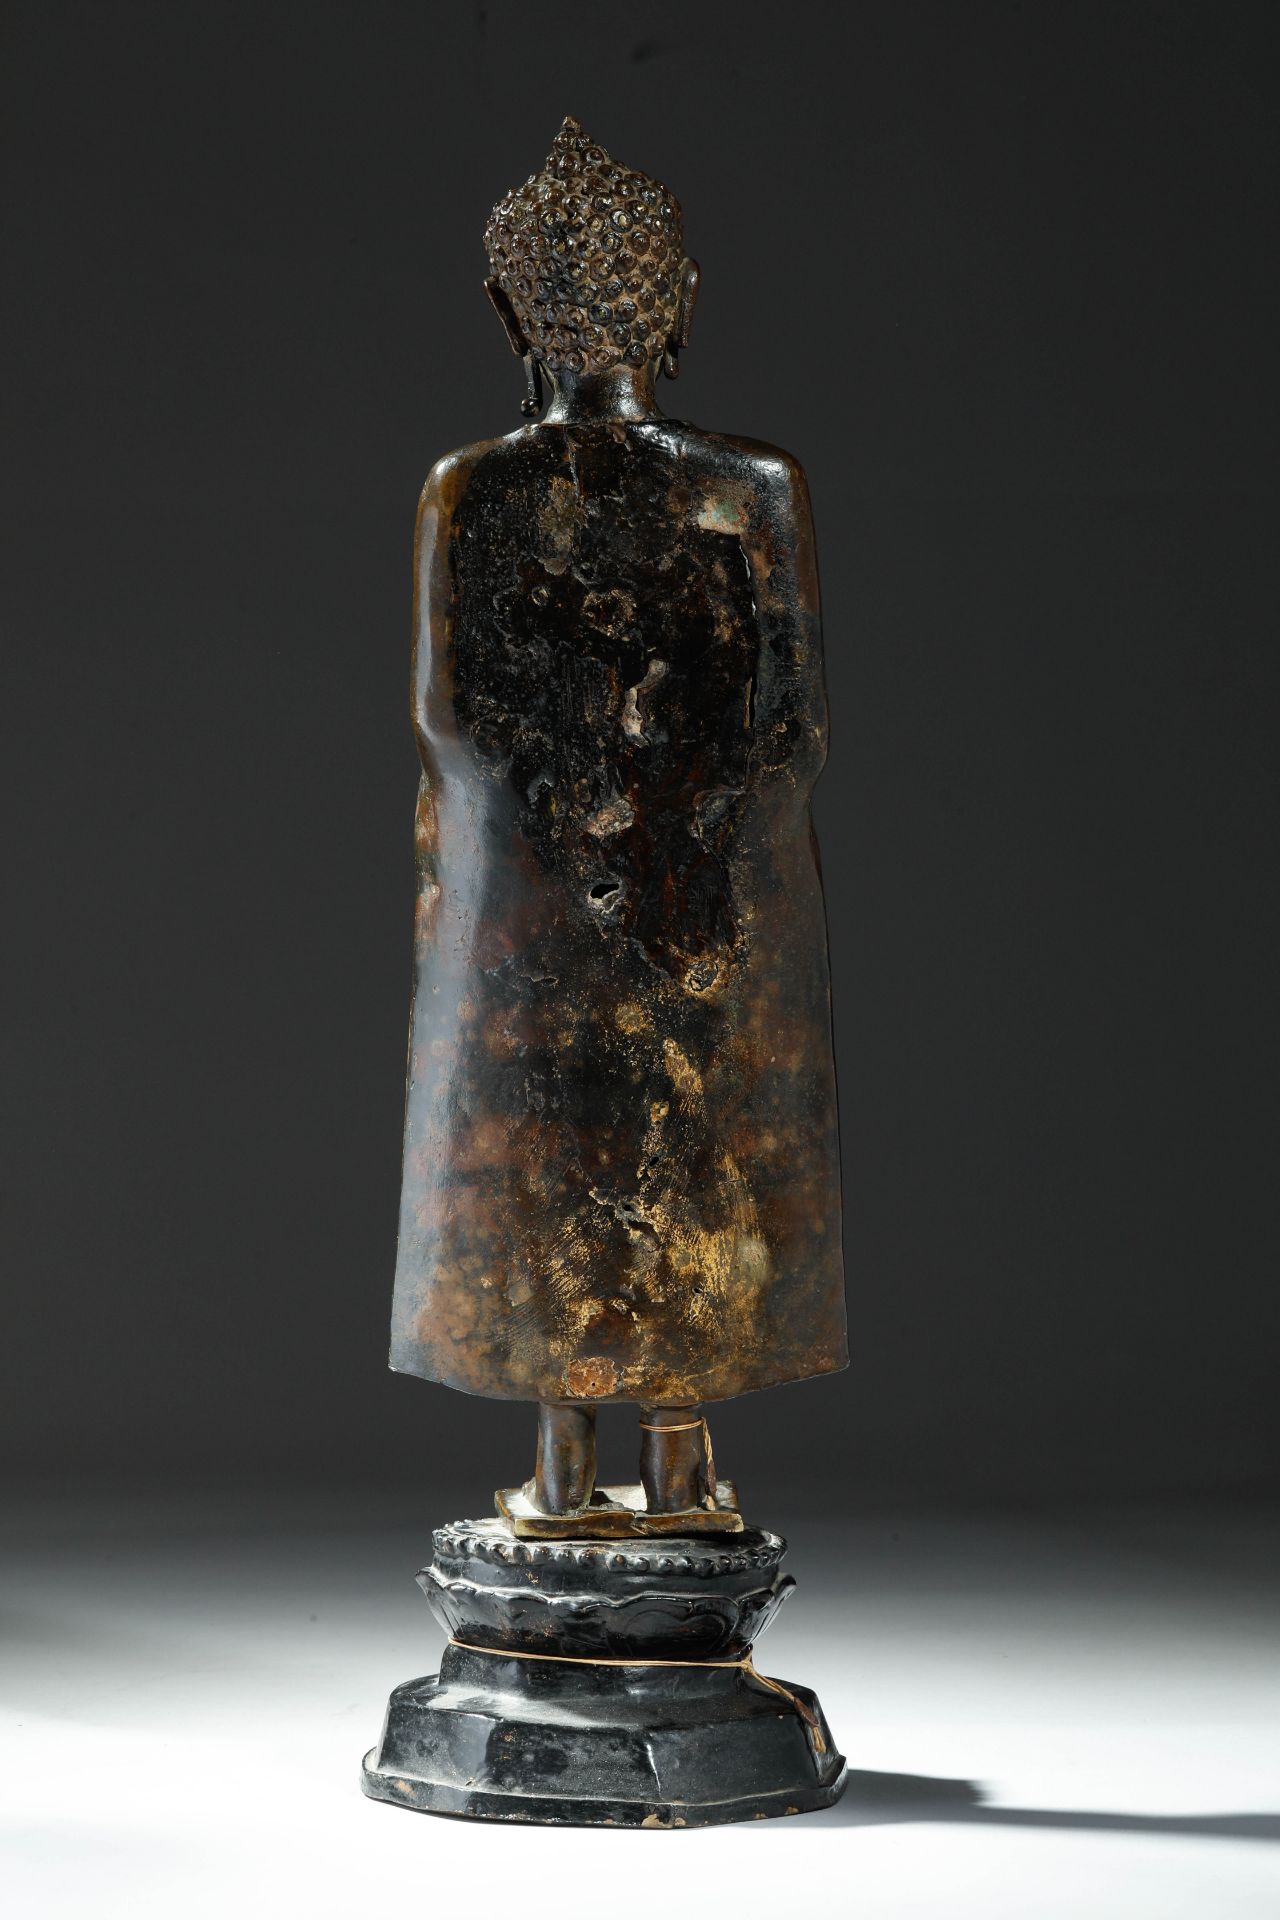 Buddha debout en posture hiératique, sur une base lotiforme , vêtu d’une robe monastique « - Image 5 of 6